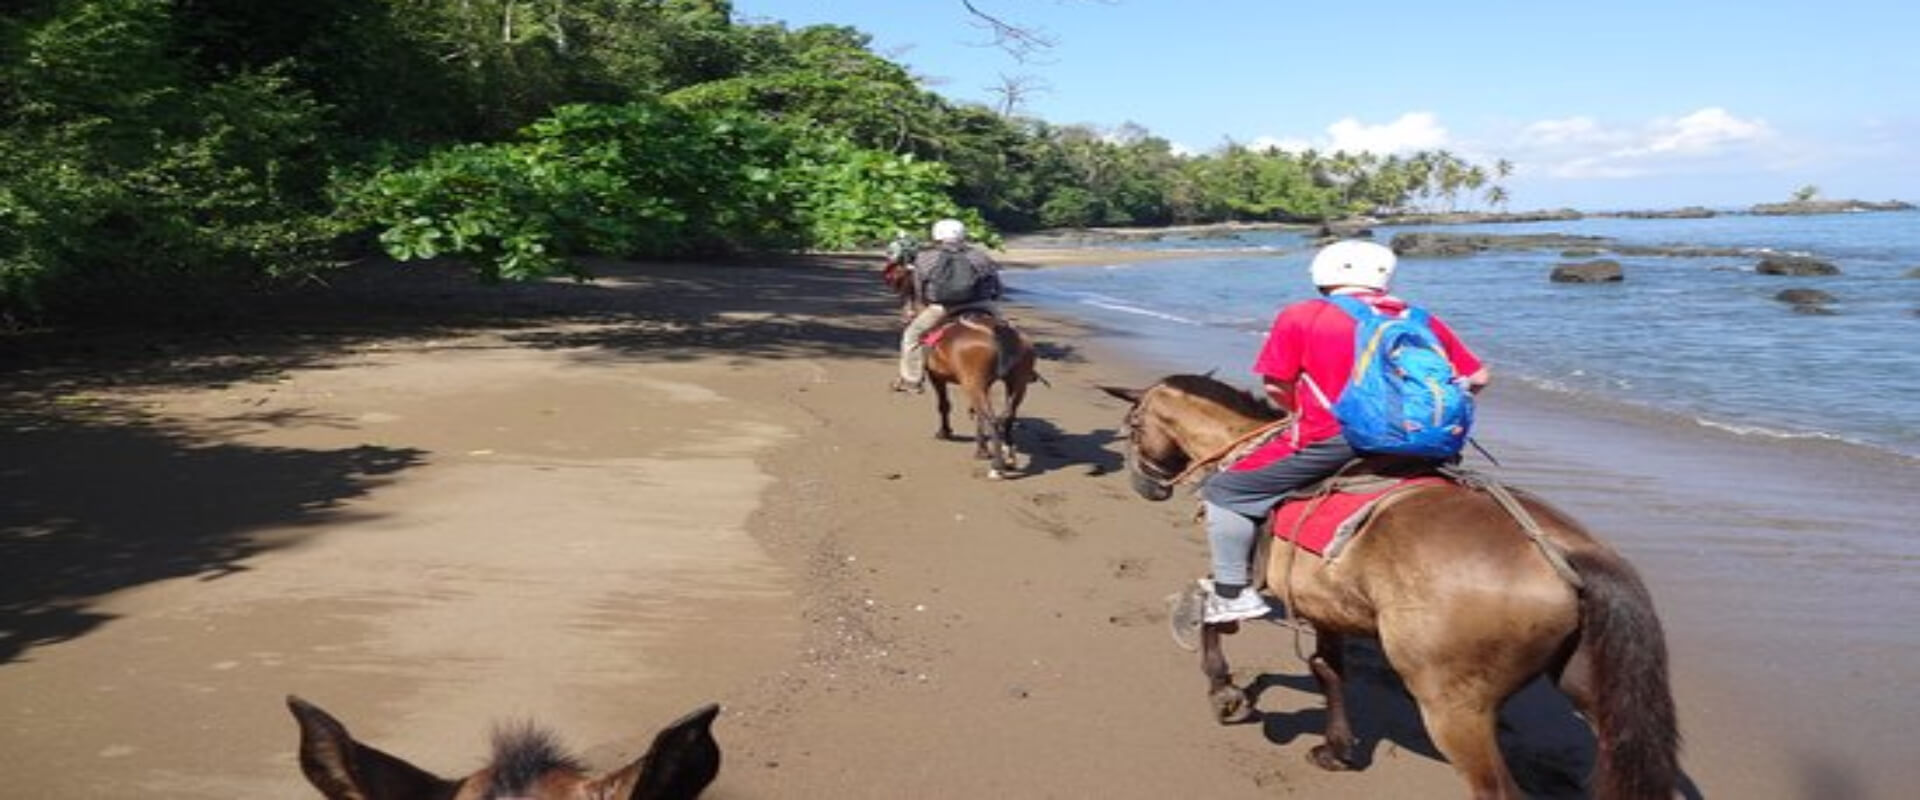 Drake Bay Horseback Riding Tour | Costa Rica Jade Tours